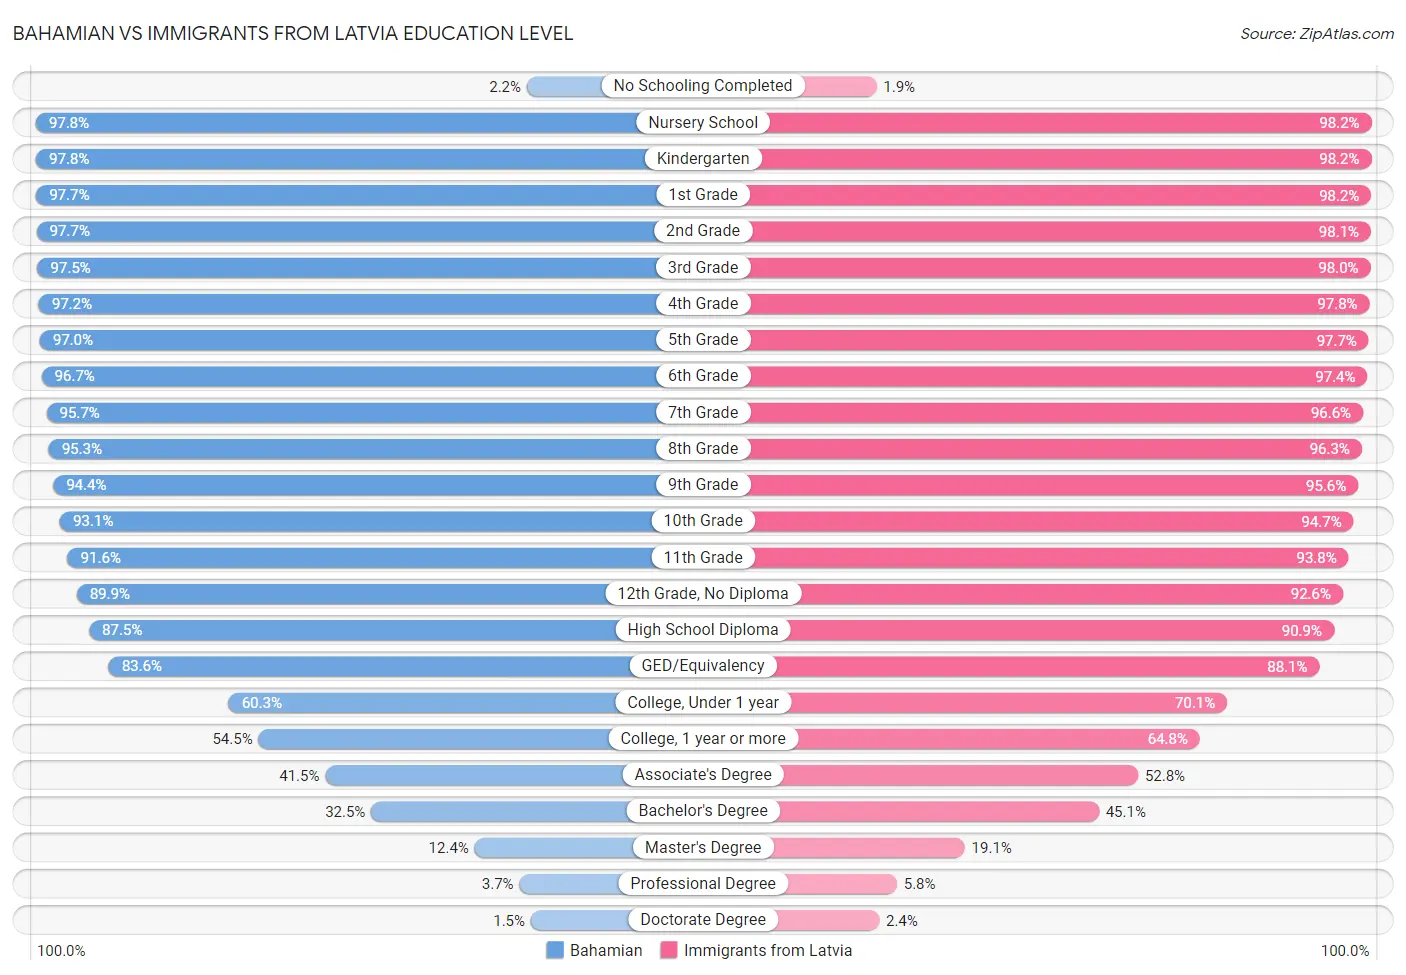 Bahamian vs Immigrants from Latvia Education Level